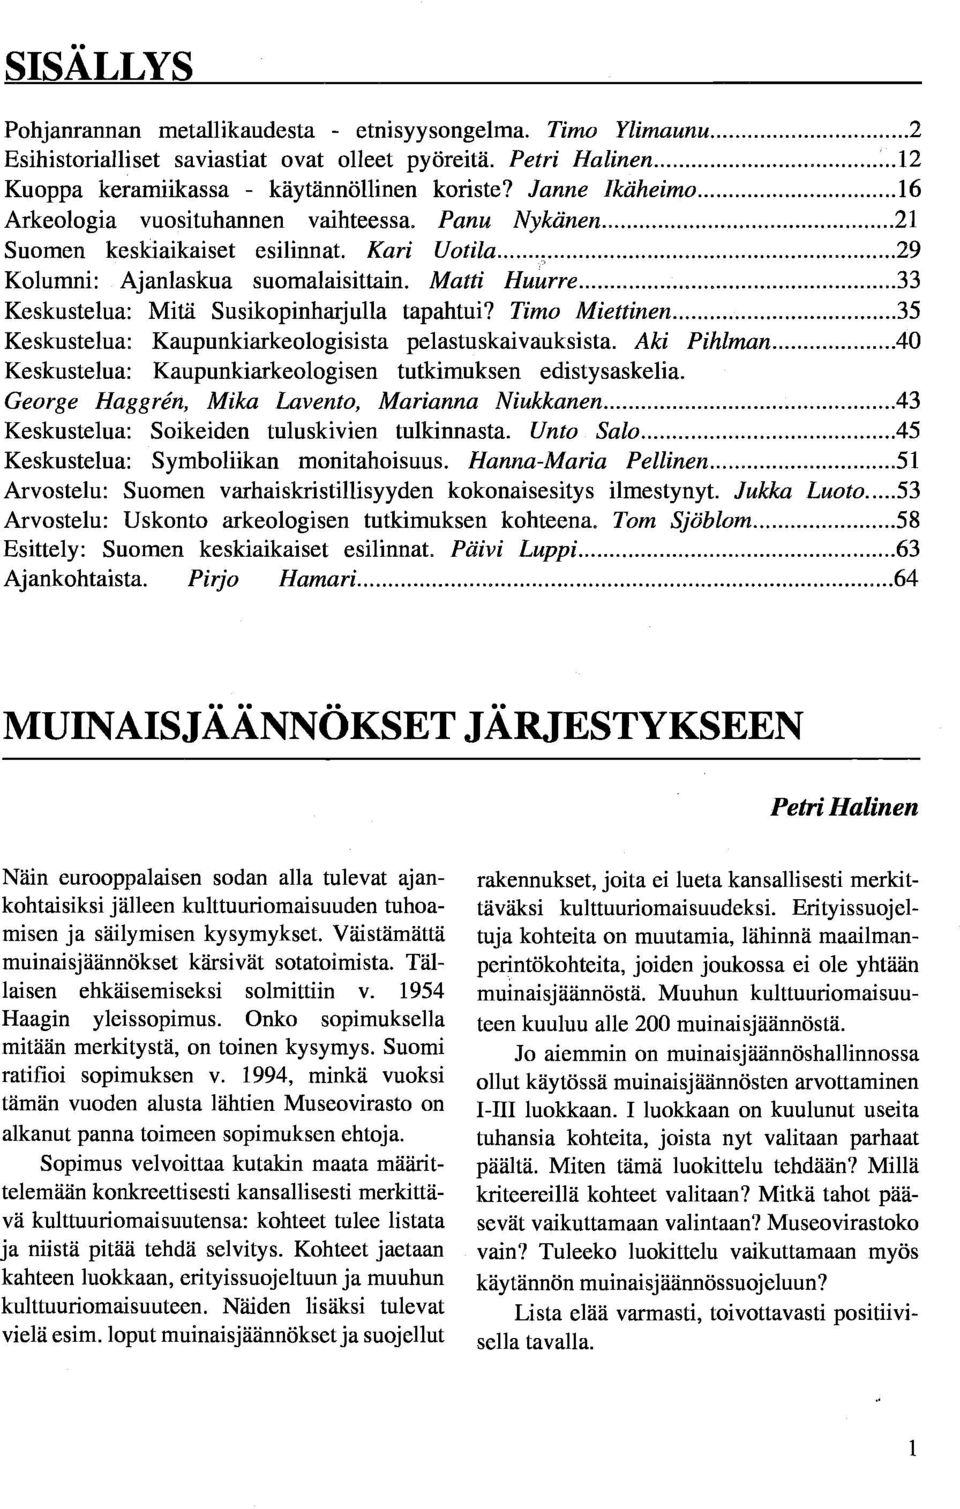 ...33 Keskustelua: Mitä Susikopinharjulla tapahtui? Timo Miettinen....35 Keskustelua: Kaupunkiarkeologisista pelastuskaivauksista. Aki Pihlman.